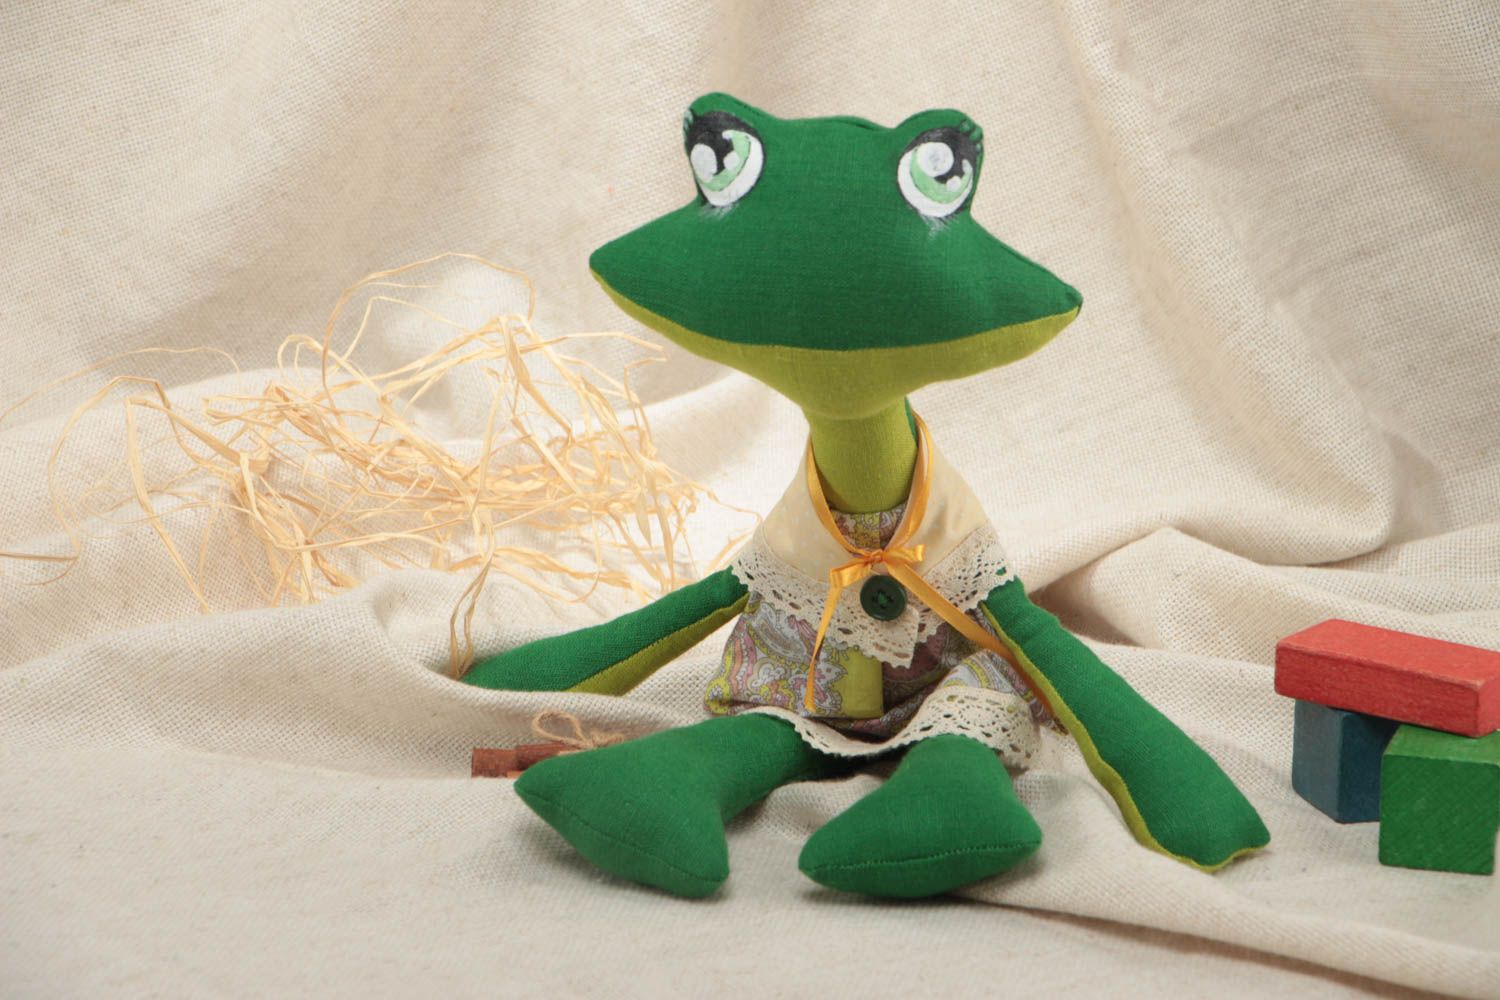 Тканевая игрушка Лягушка зеленая расписанная акриловыми красками ручной работы фото 1